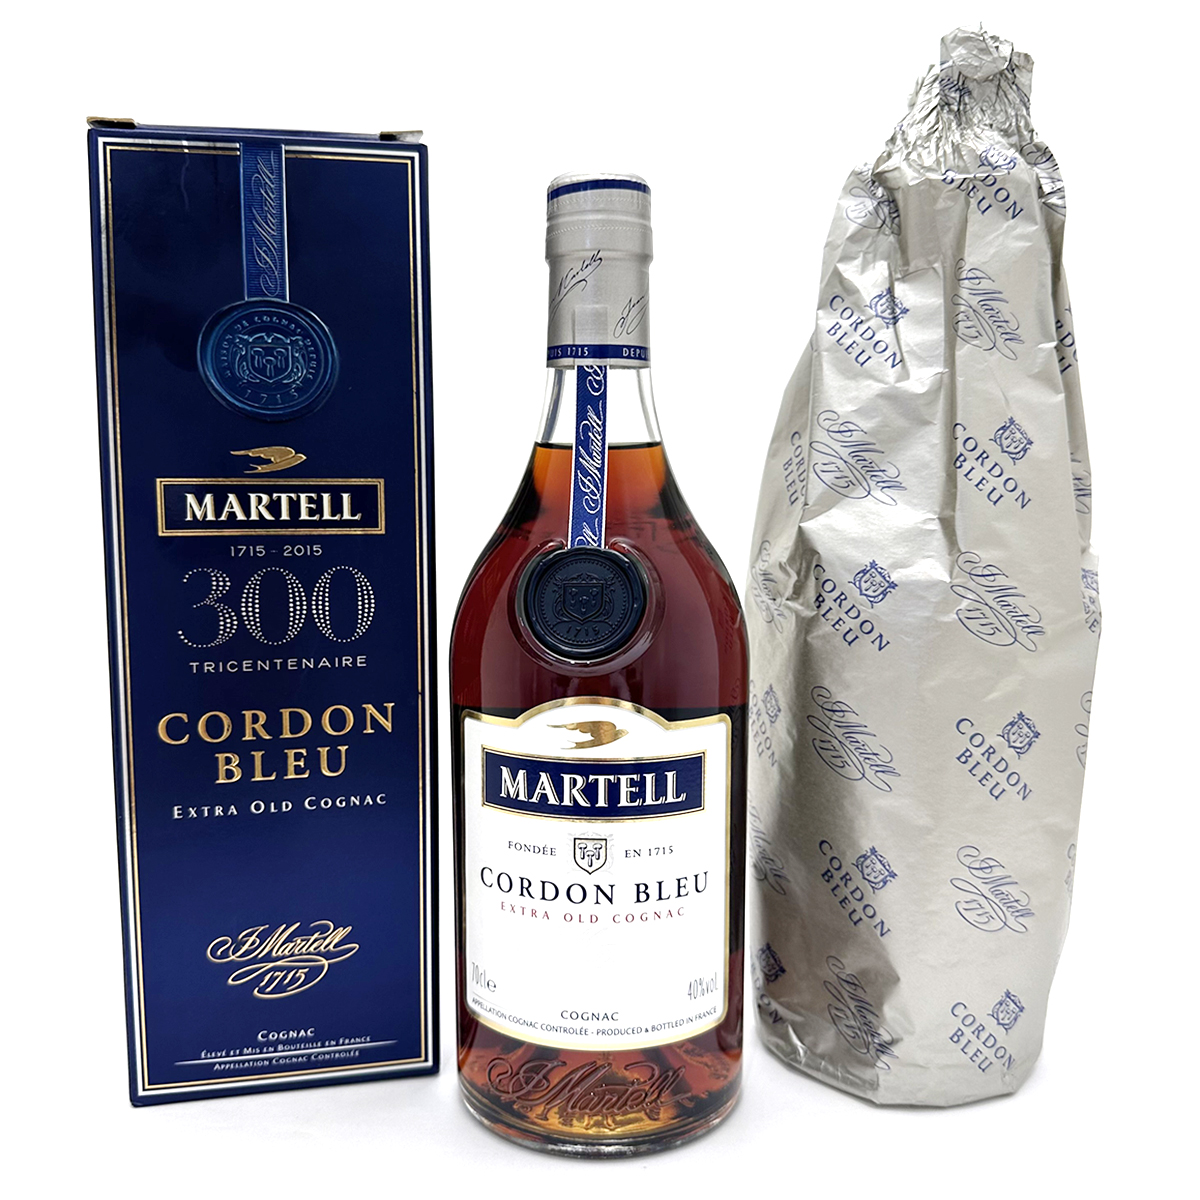 マーテル(MARTELL) コルドンブルー 300周年記念ボトル エクストラオールド コニャック ウイスキー 700ml 40% 箱